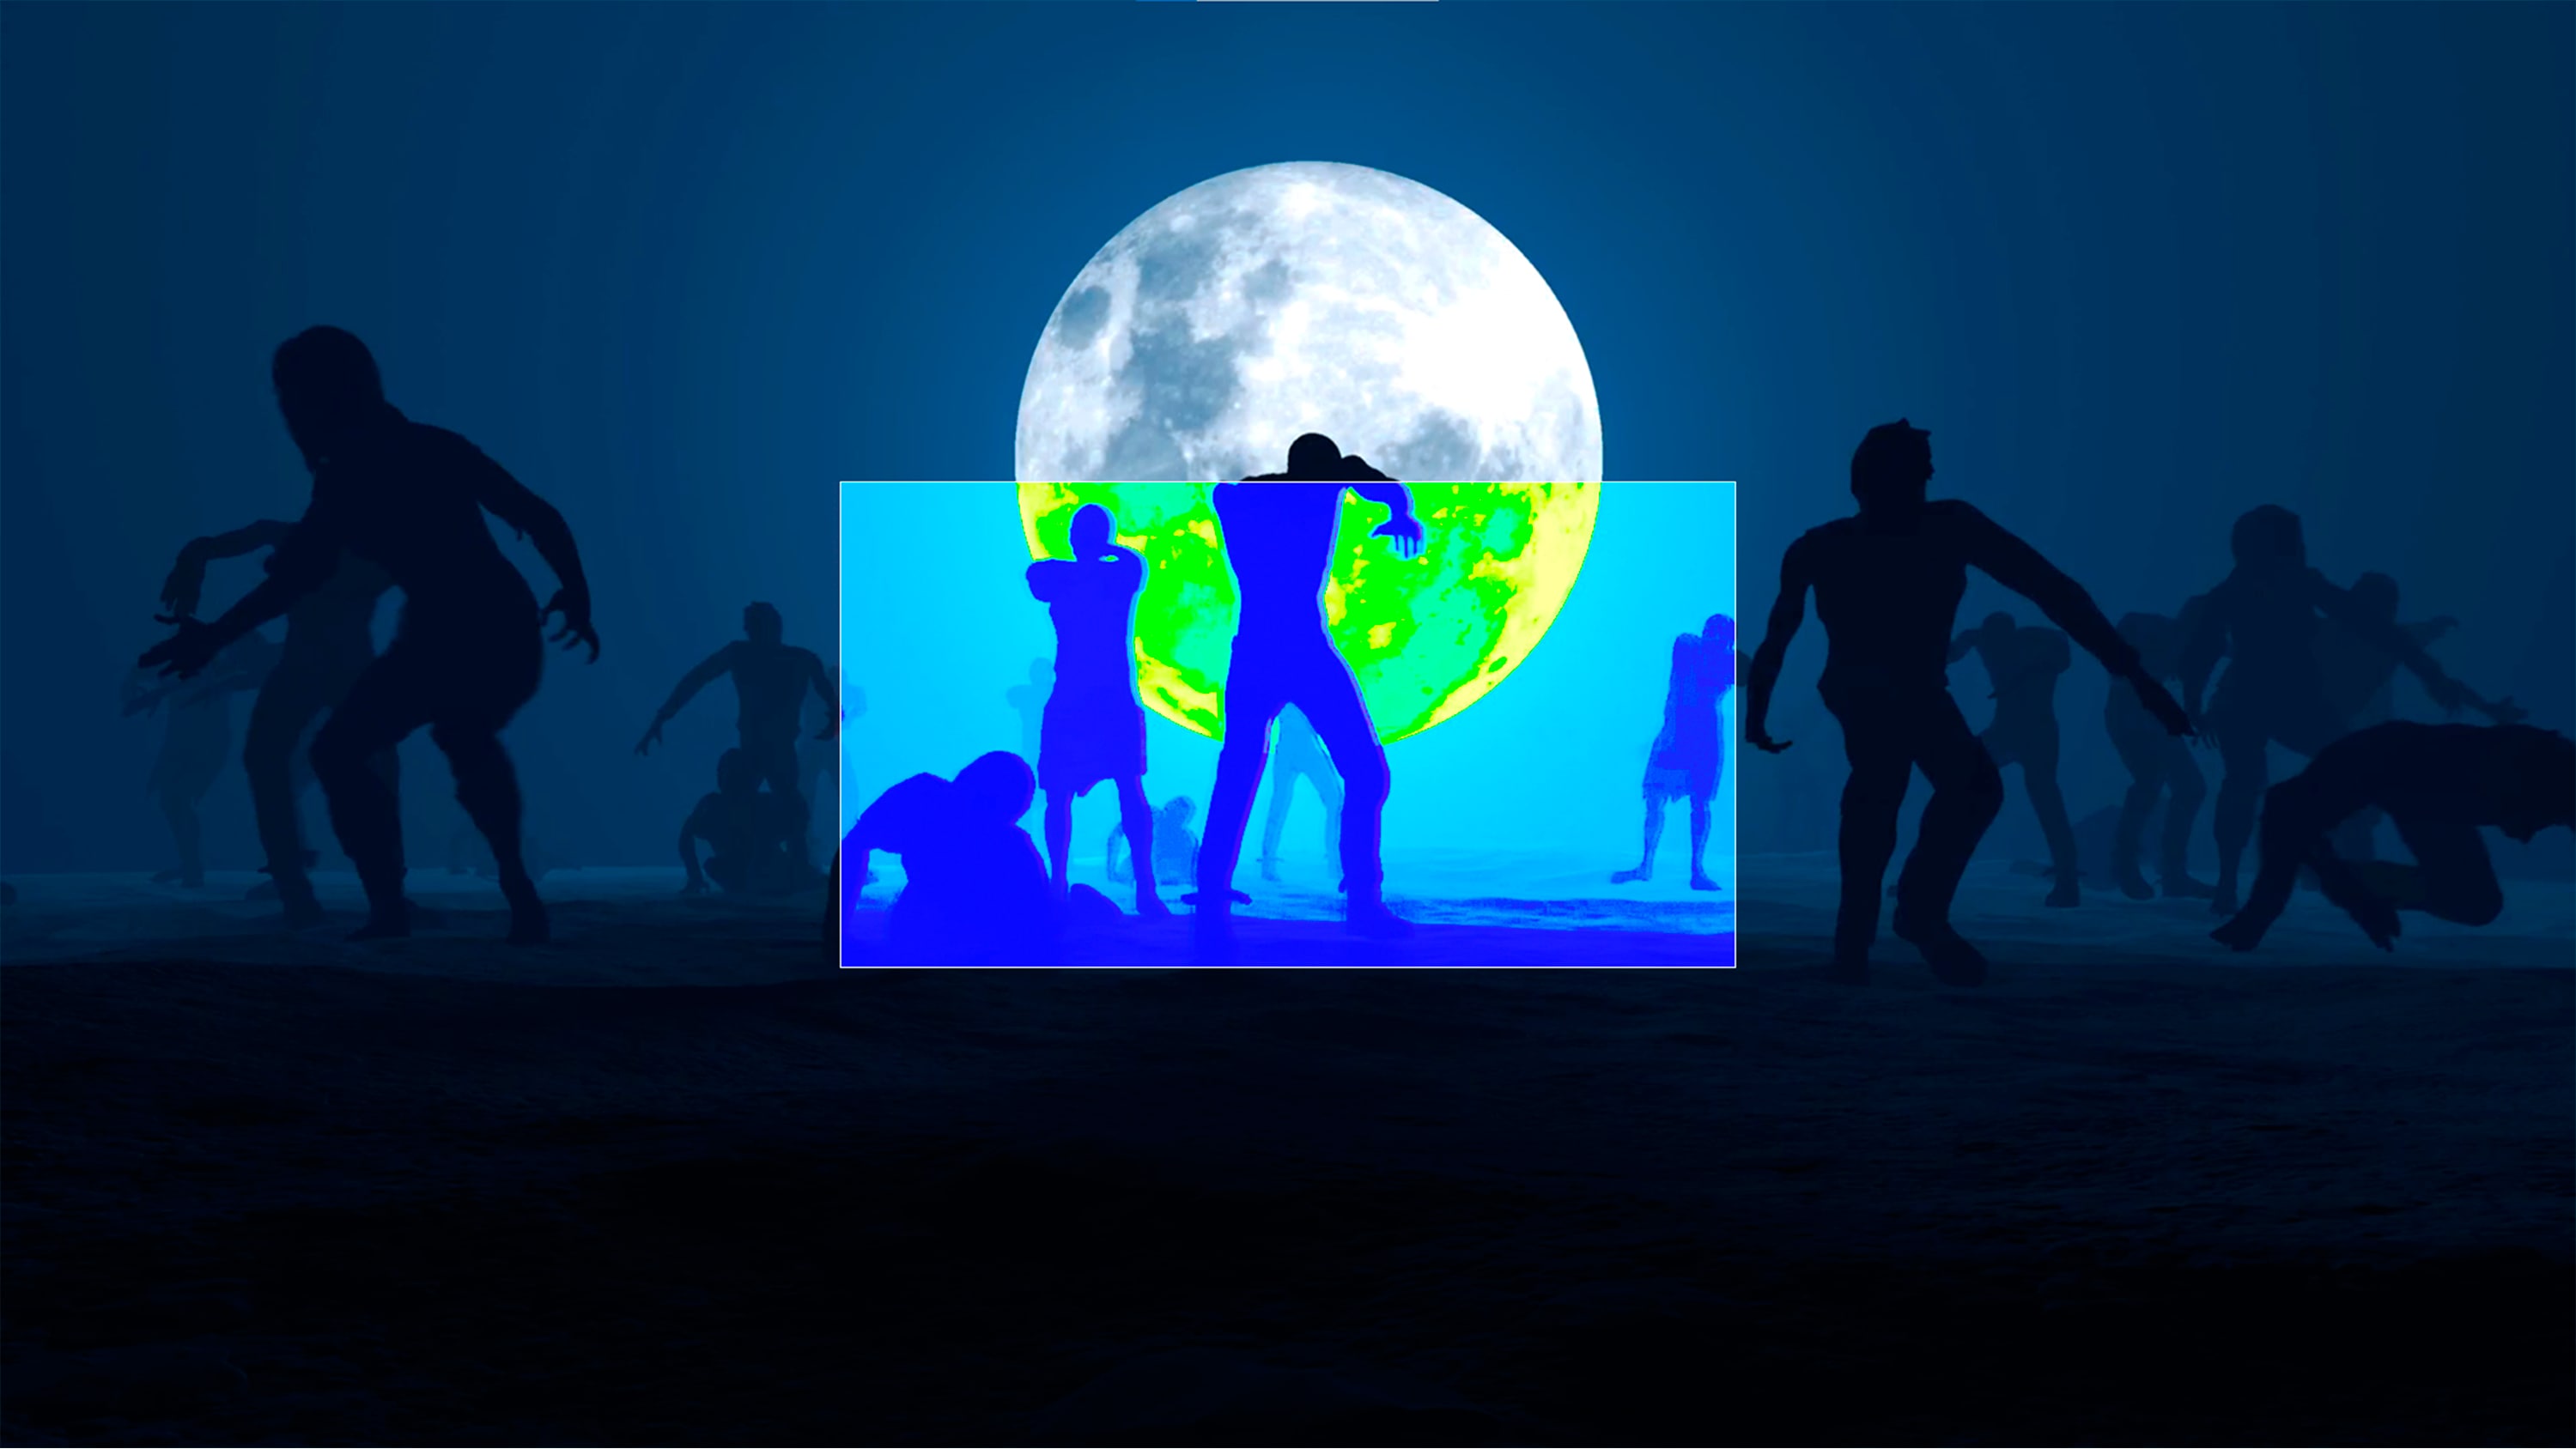 Szene aus einem Spiel, in der Zombies vor einem Vollmond zu sehen sind.